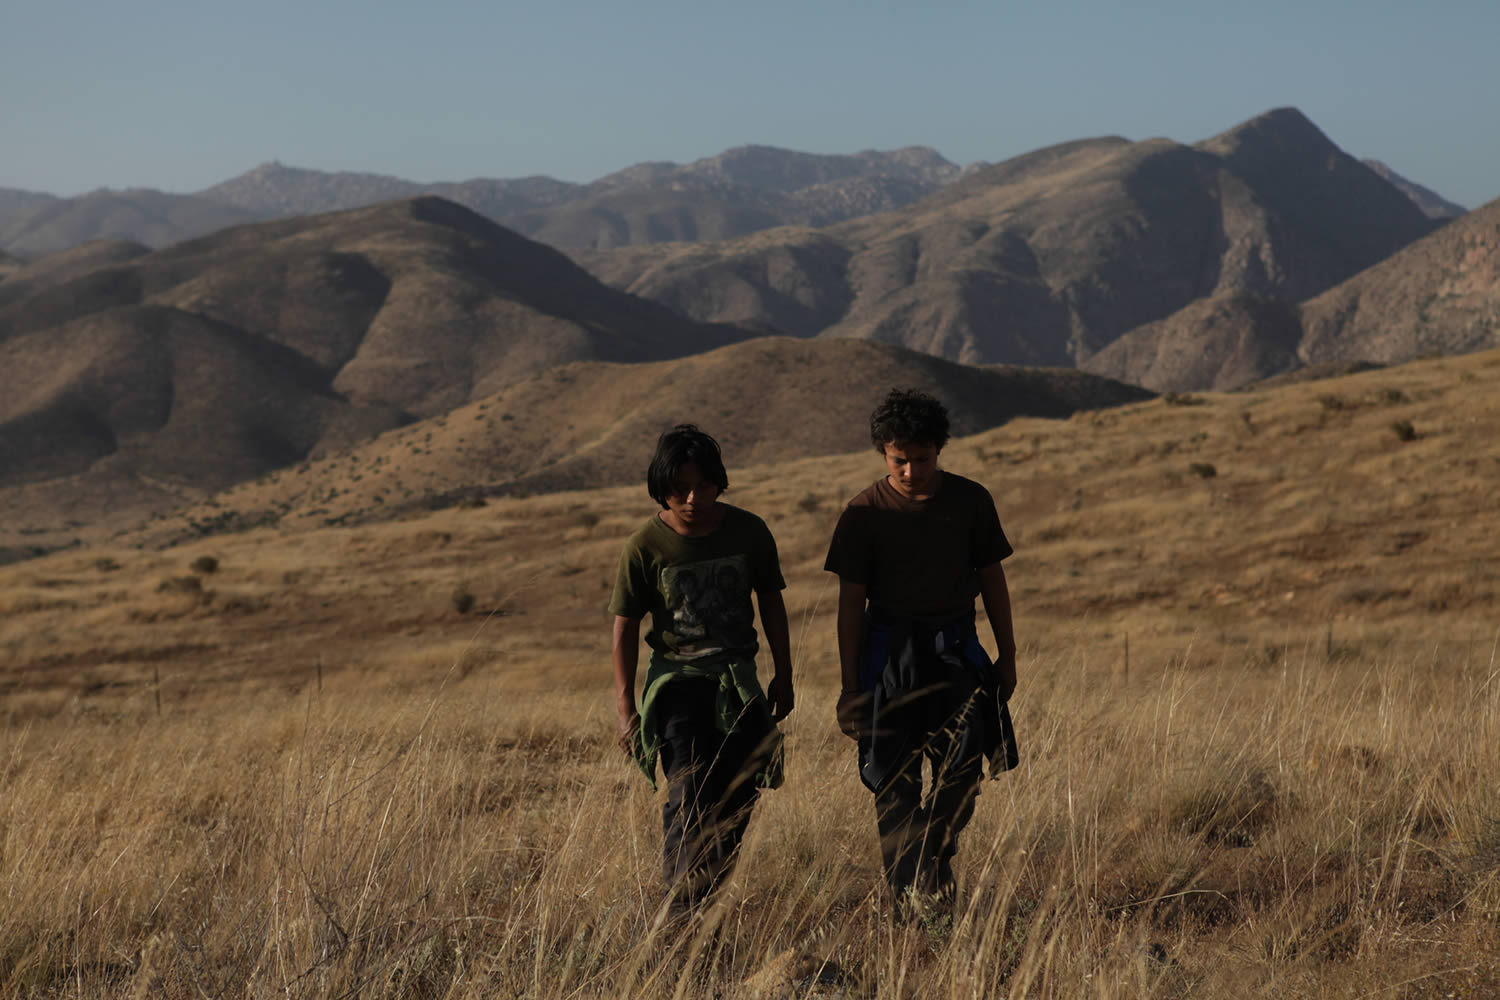 two kids walking in field with mountains in back, La Jaula de Oro